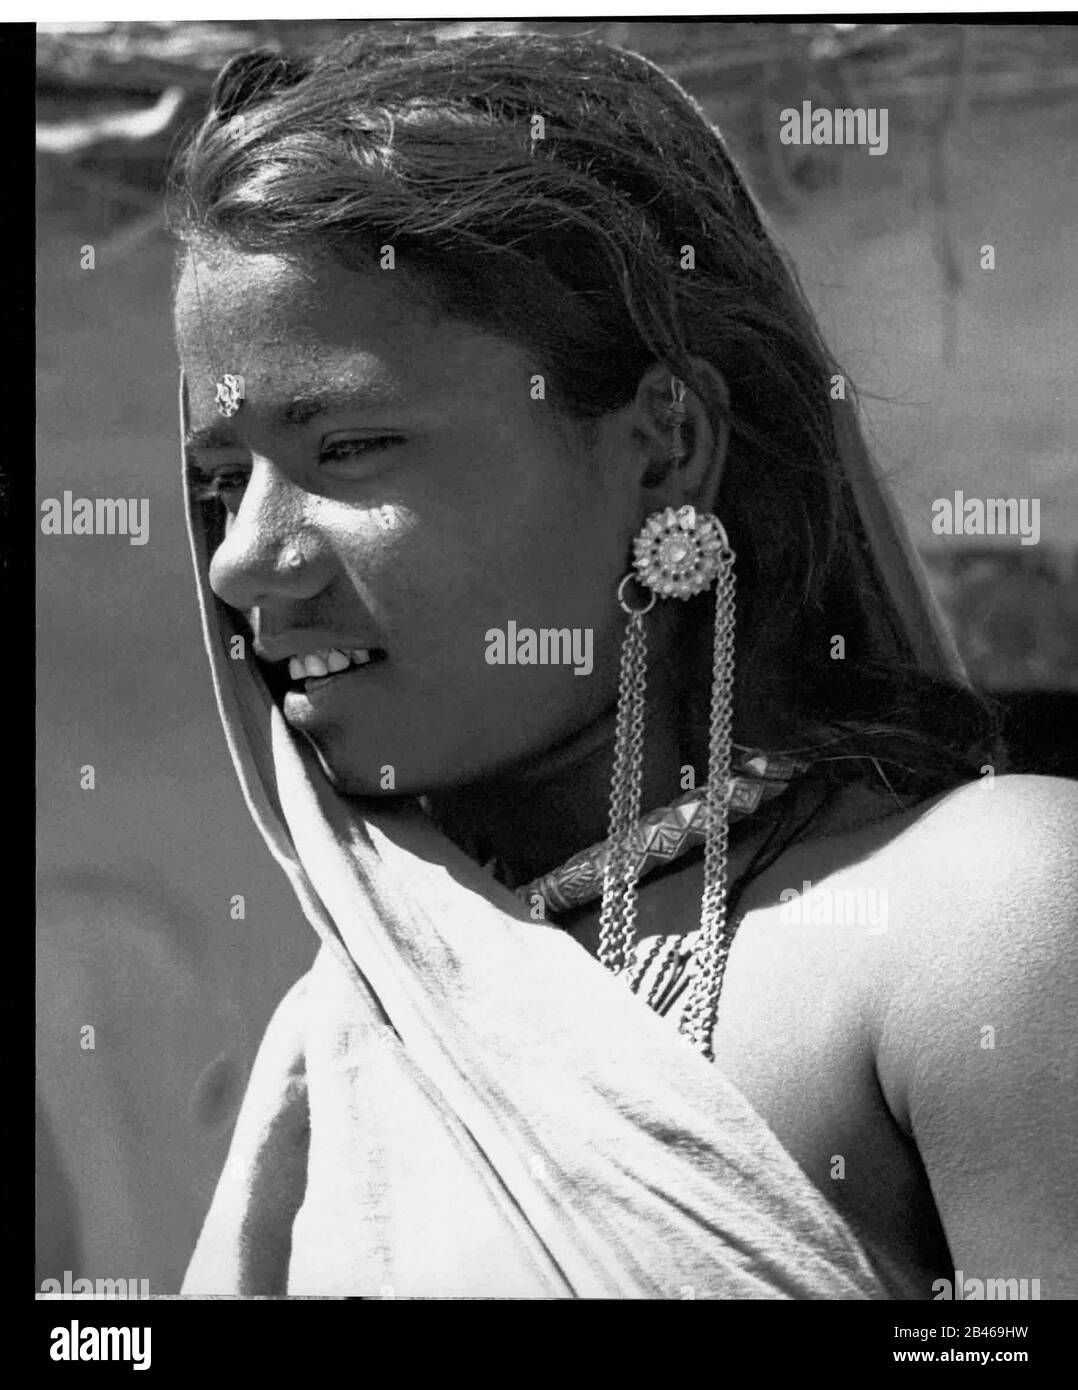 Donna rurale indiana con collana in argento e anello auricolare in argento,  Uttar Pradesh, India, Asia, 1955, vecchia immagine del 1900 vintage Foto  stock - Alamy